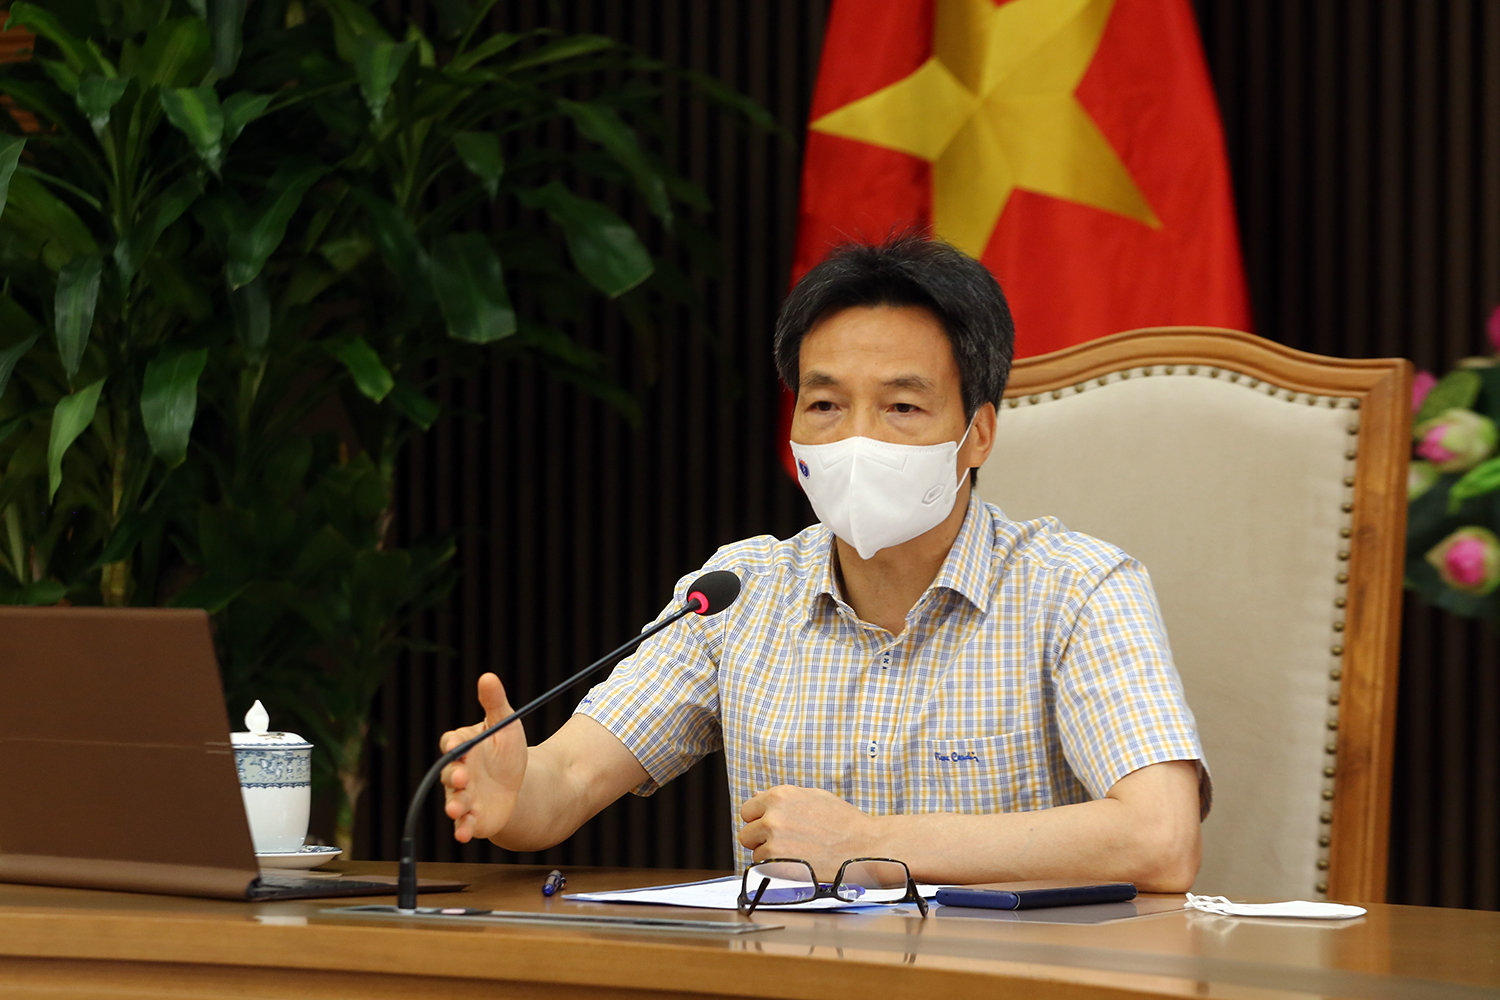 Phó Thủ tướng Vũ Đức Đam yêu cầu Bộ Y tế, tỉnh Bắc Giang áp dụng các biện pháp tin học hóa, xét nghiệm mẫu gộp để theo kịp tốc độ truy vết, lấy mẫu.